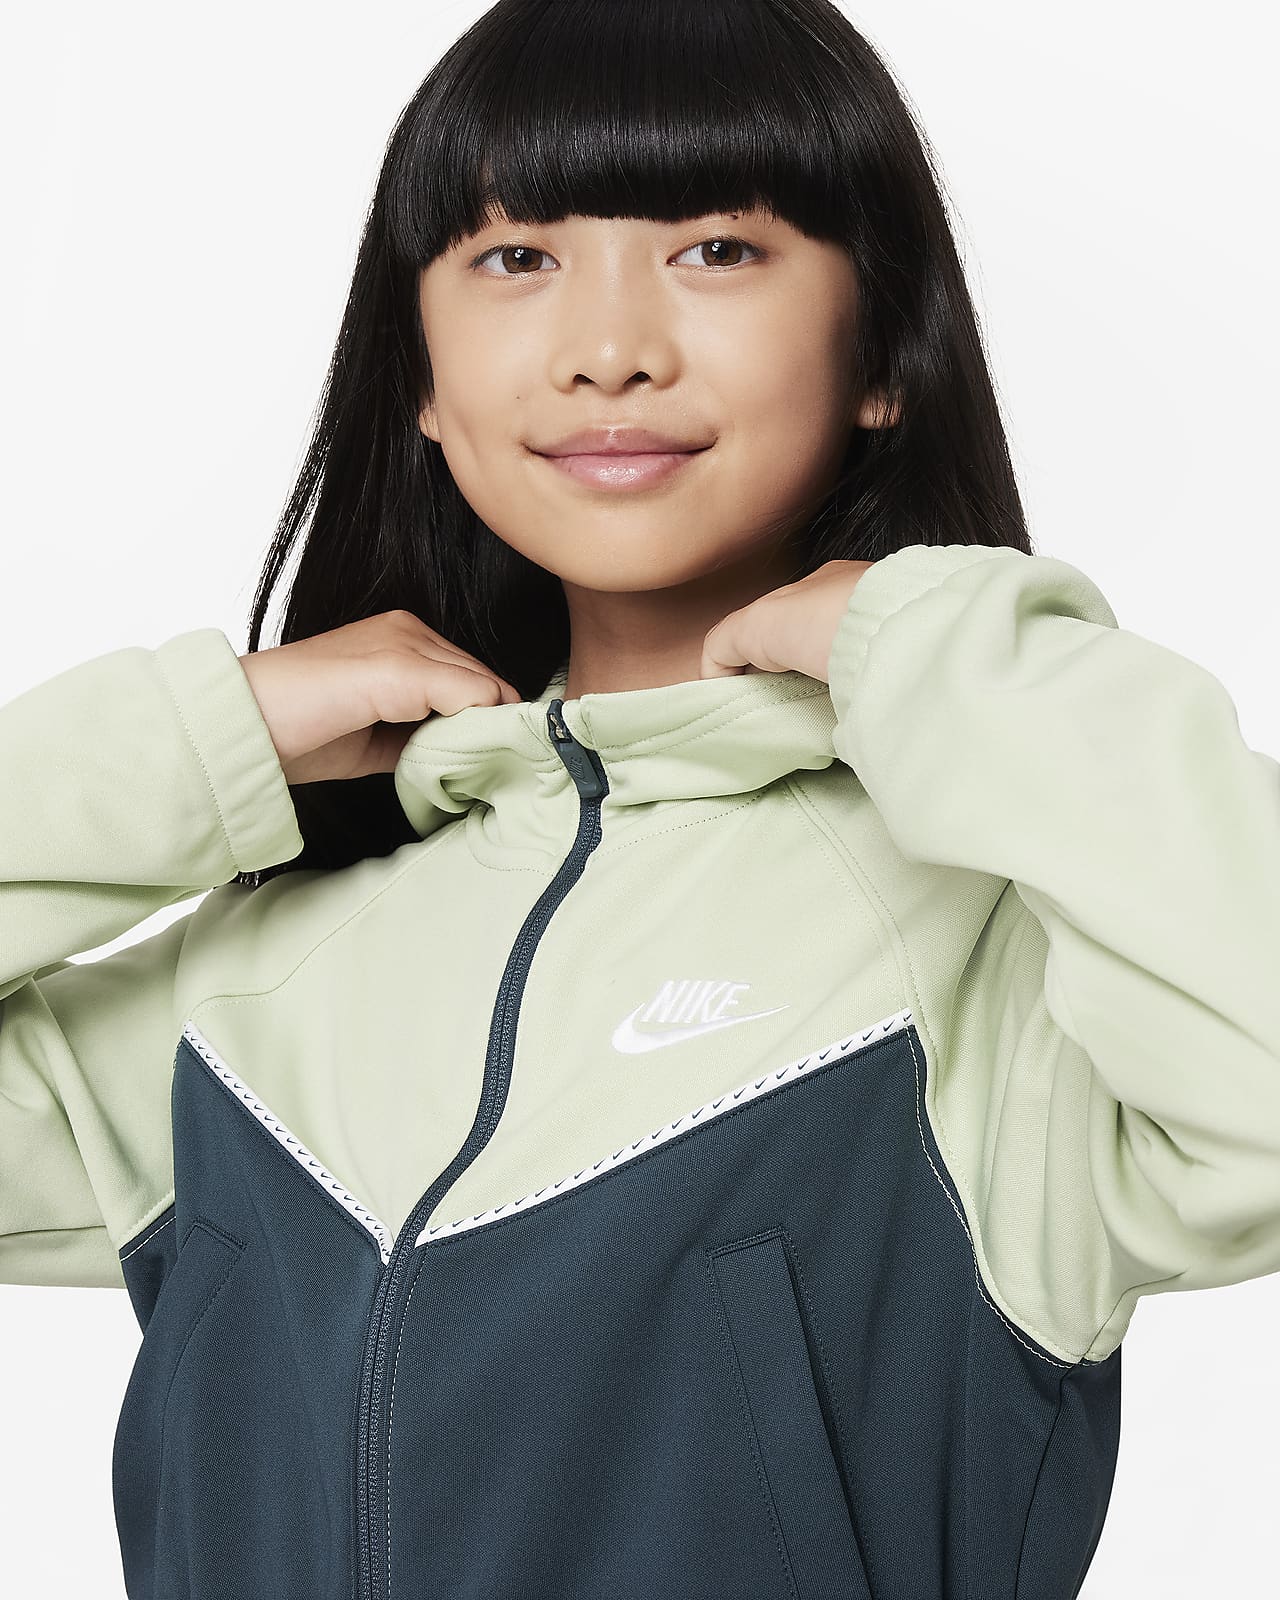 Nike Sportswear Windrunner Older Kids' Hooded Jacket. Nike LU